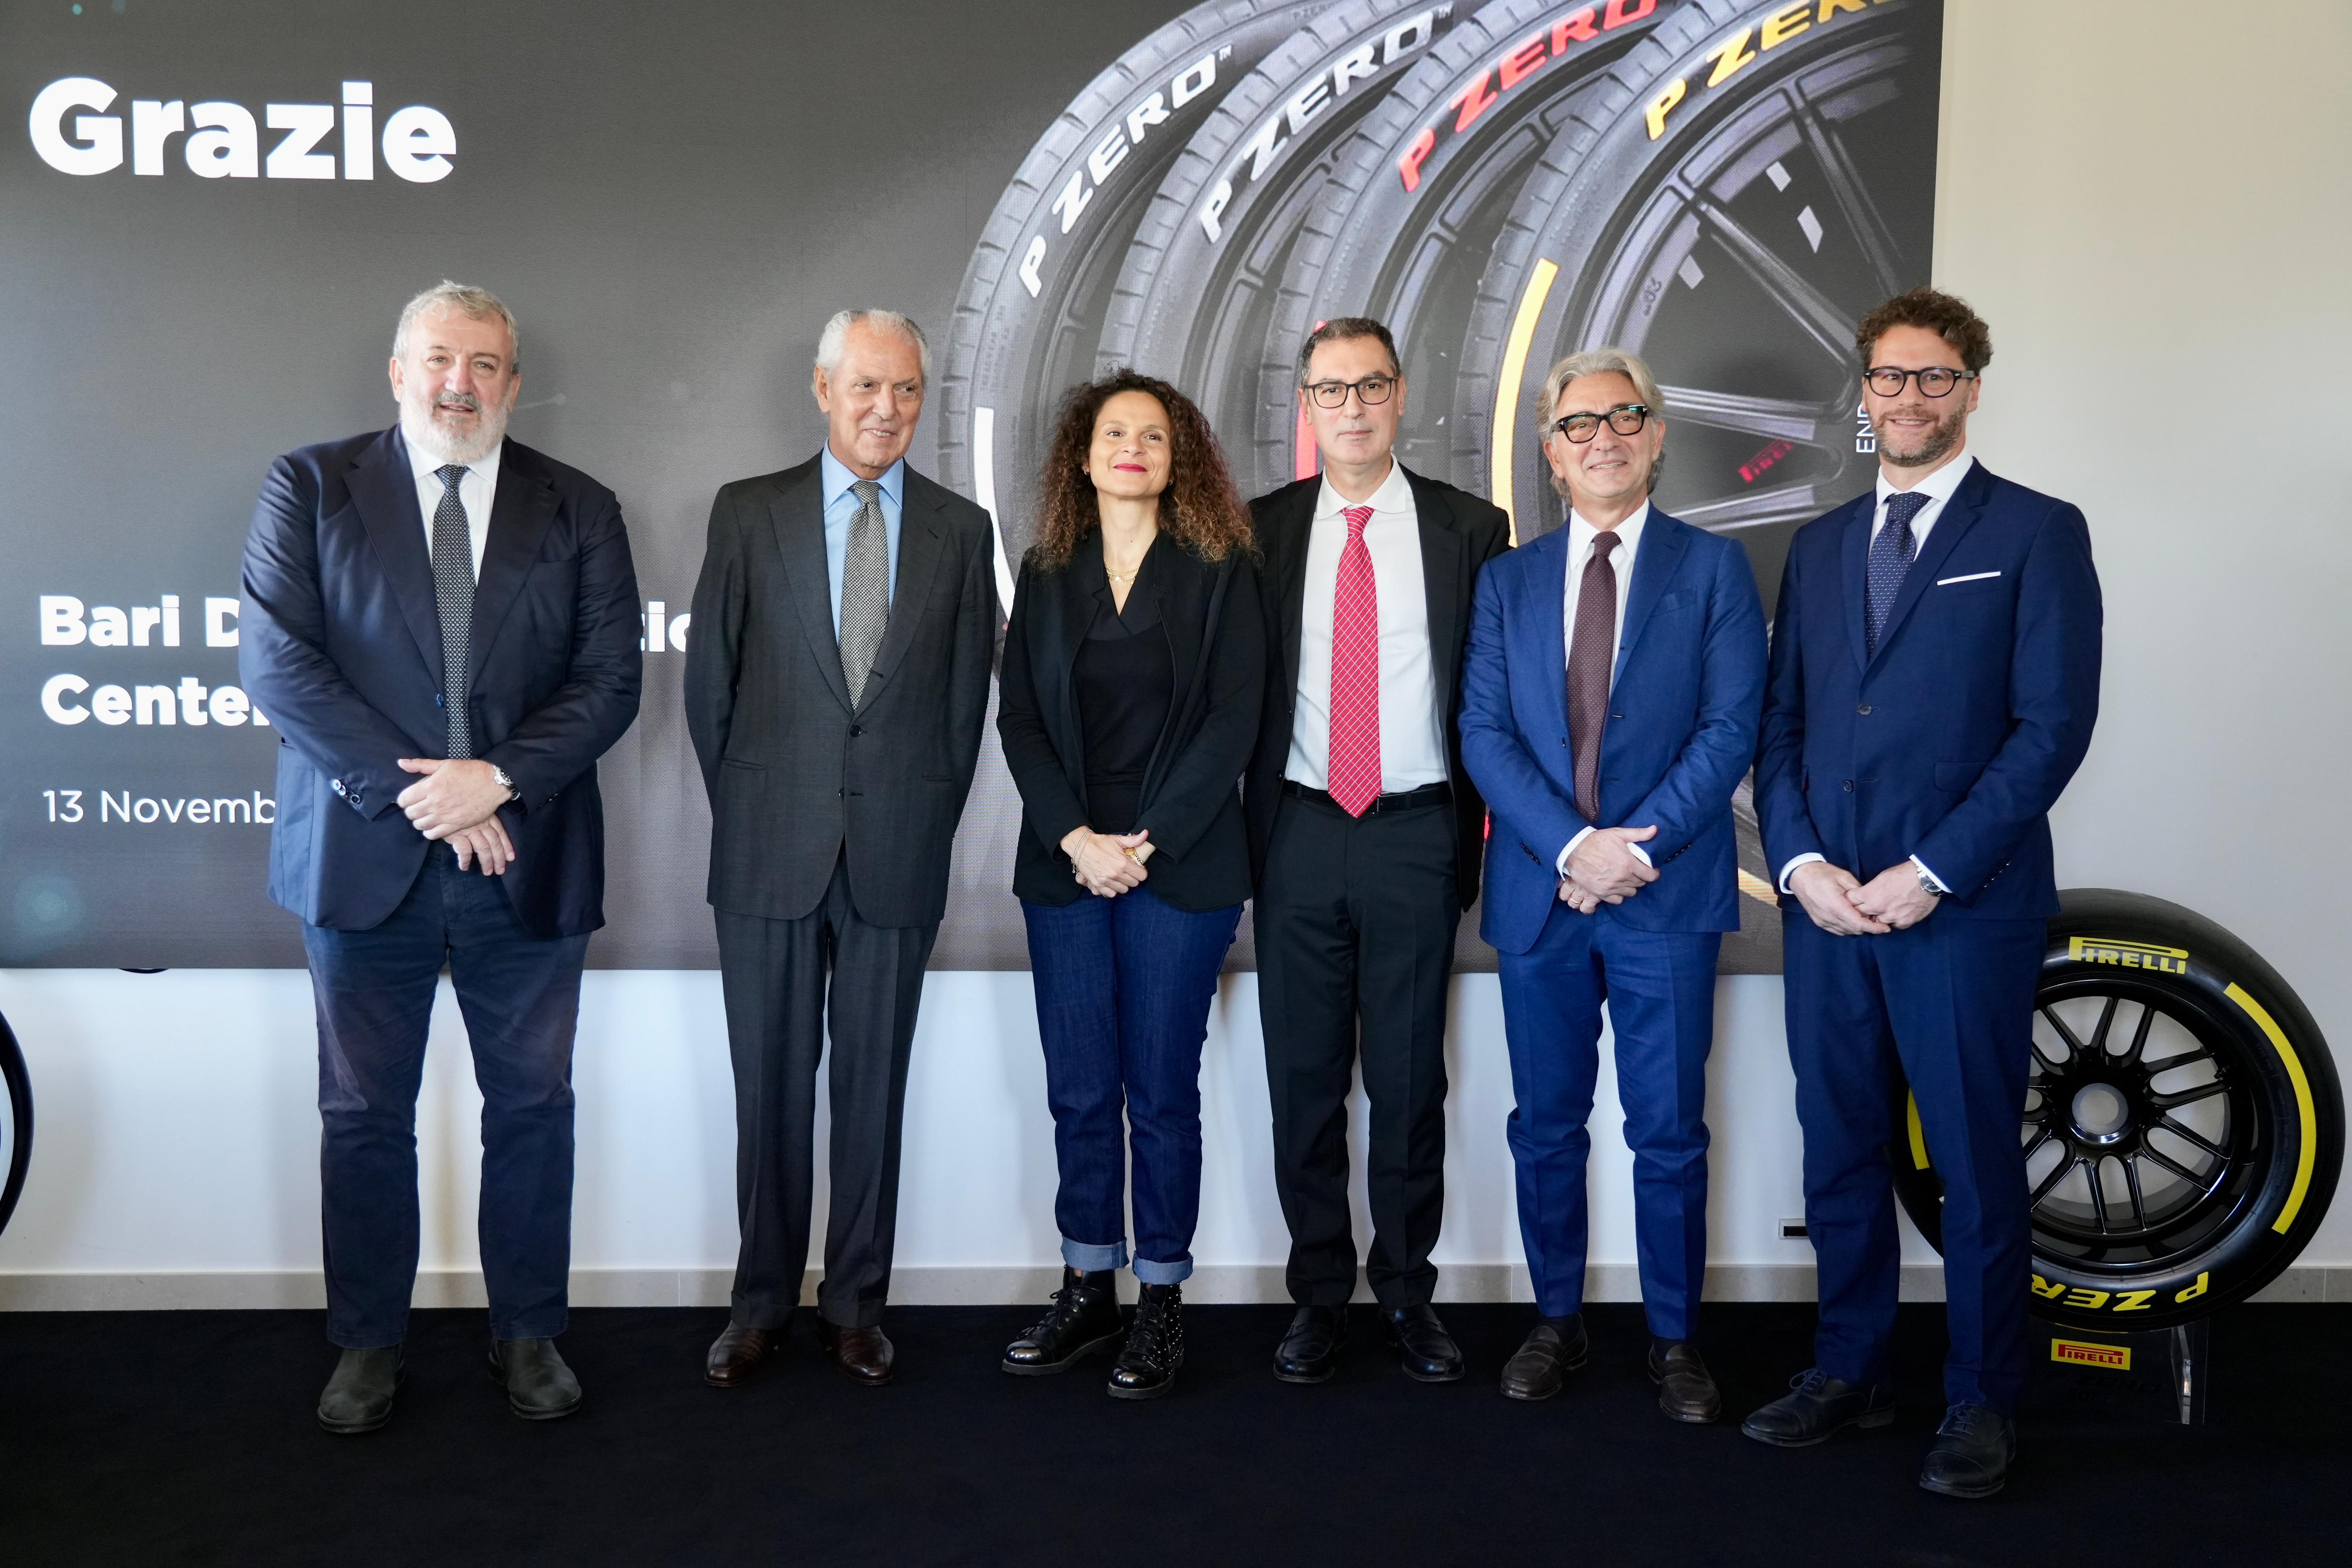 Galleria Pirelli: si rafforza a Bari, nel 2025 i dipendenti del Digital Solutions Center saliranno a 80 dai 50 previsti inizialmente - Diapositiva 1 di 13